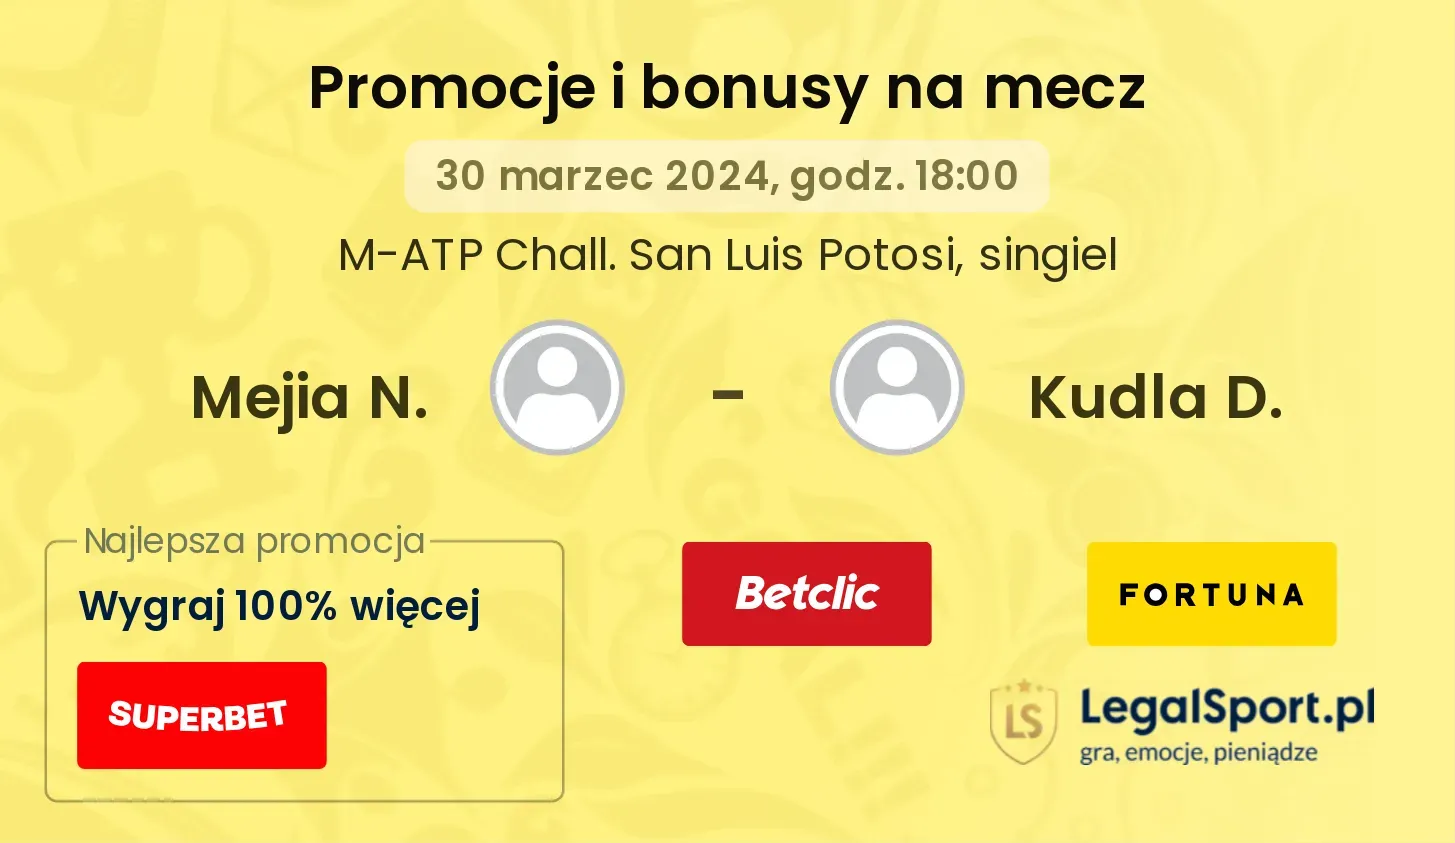 Mejia N. - Kudla D. promocje bonusy na mecz